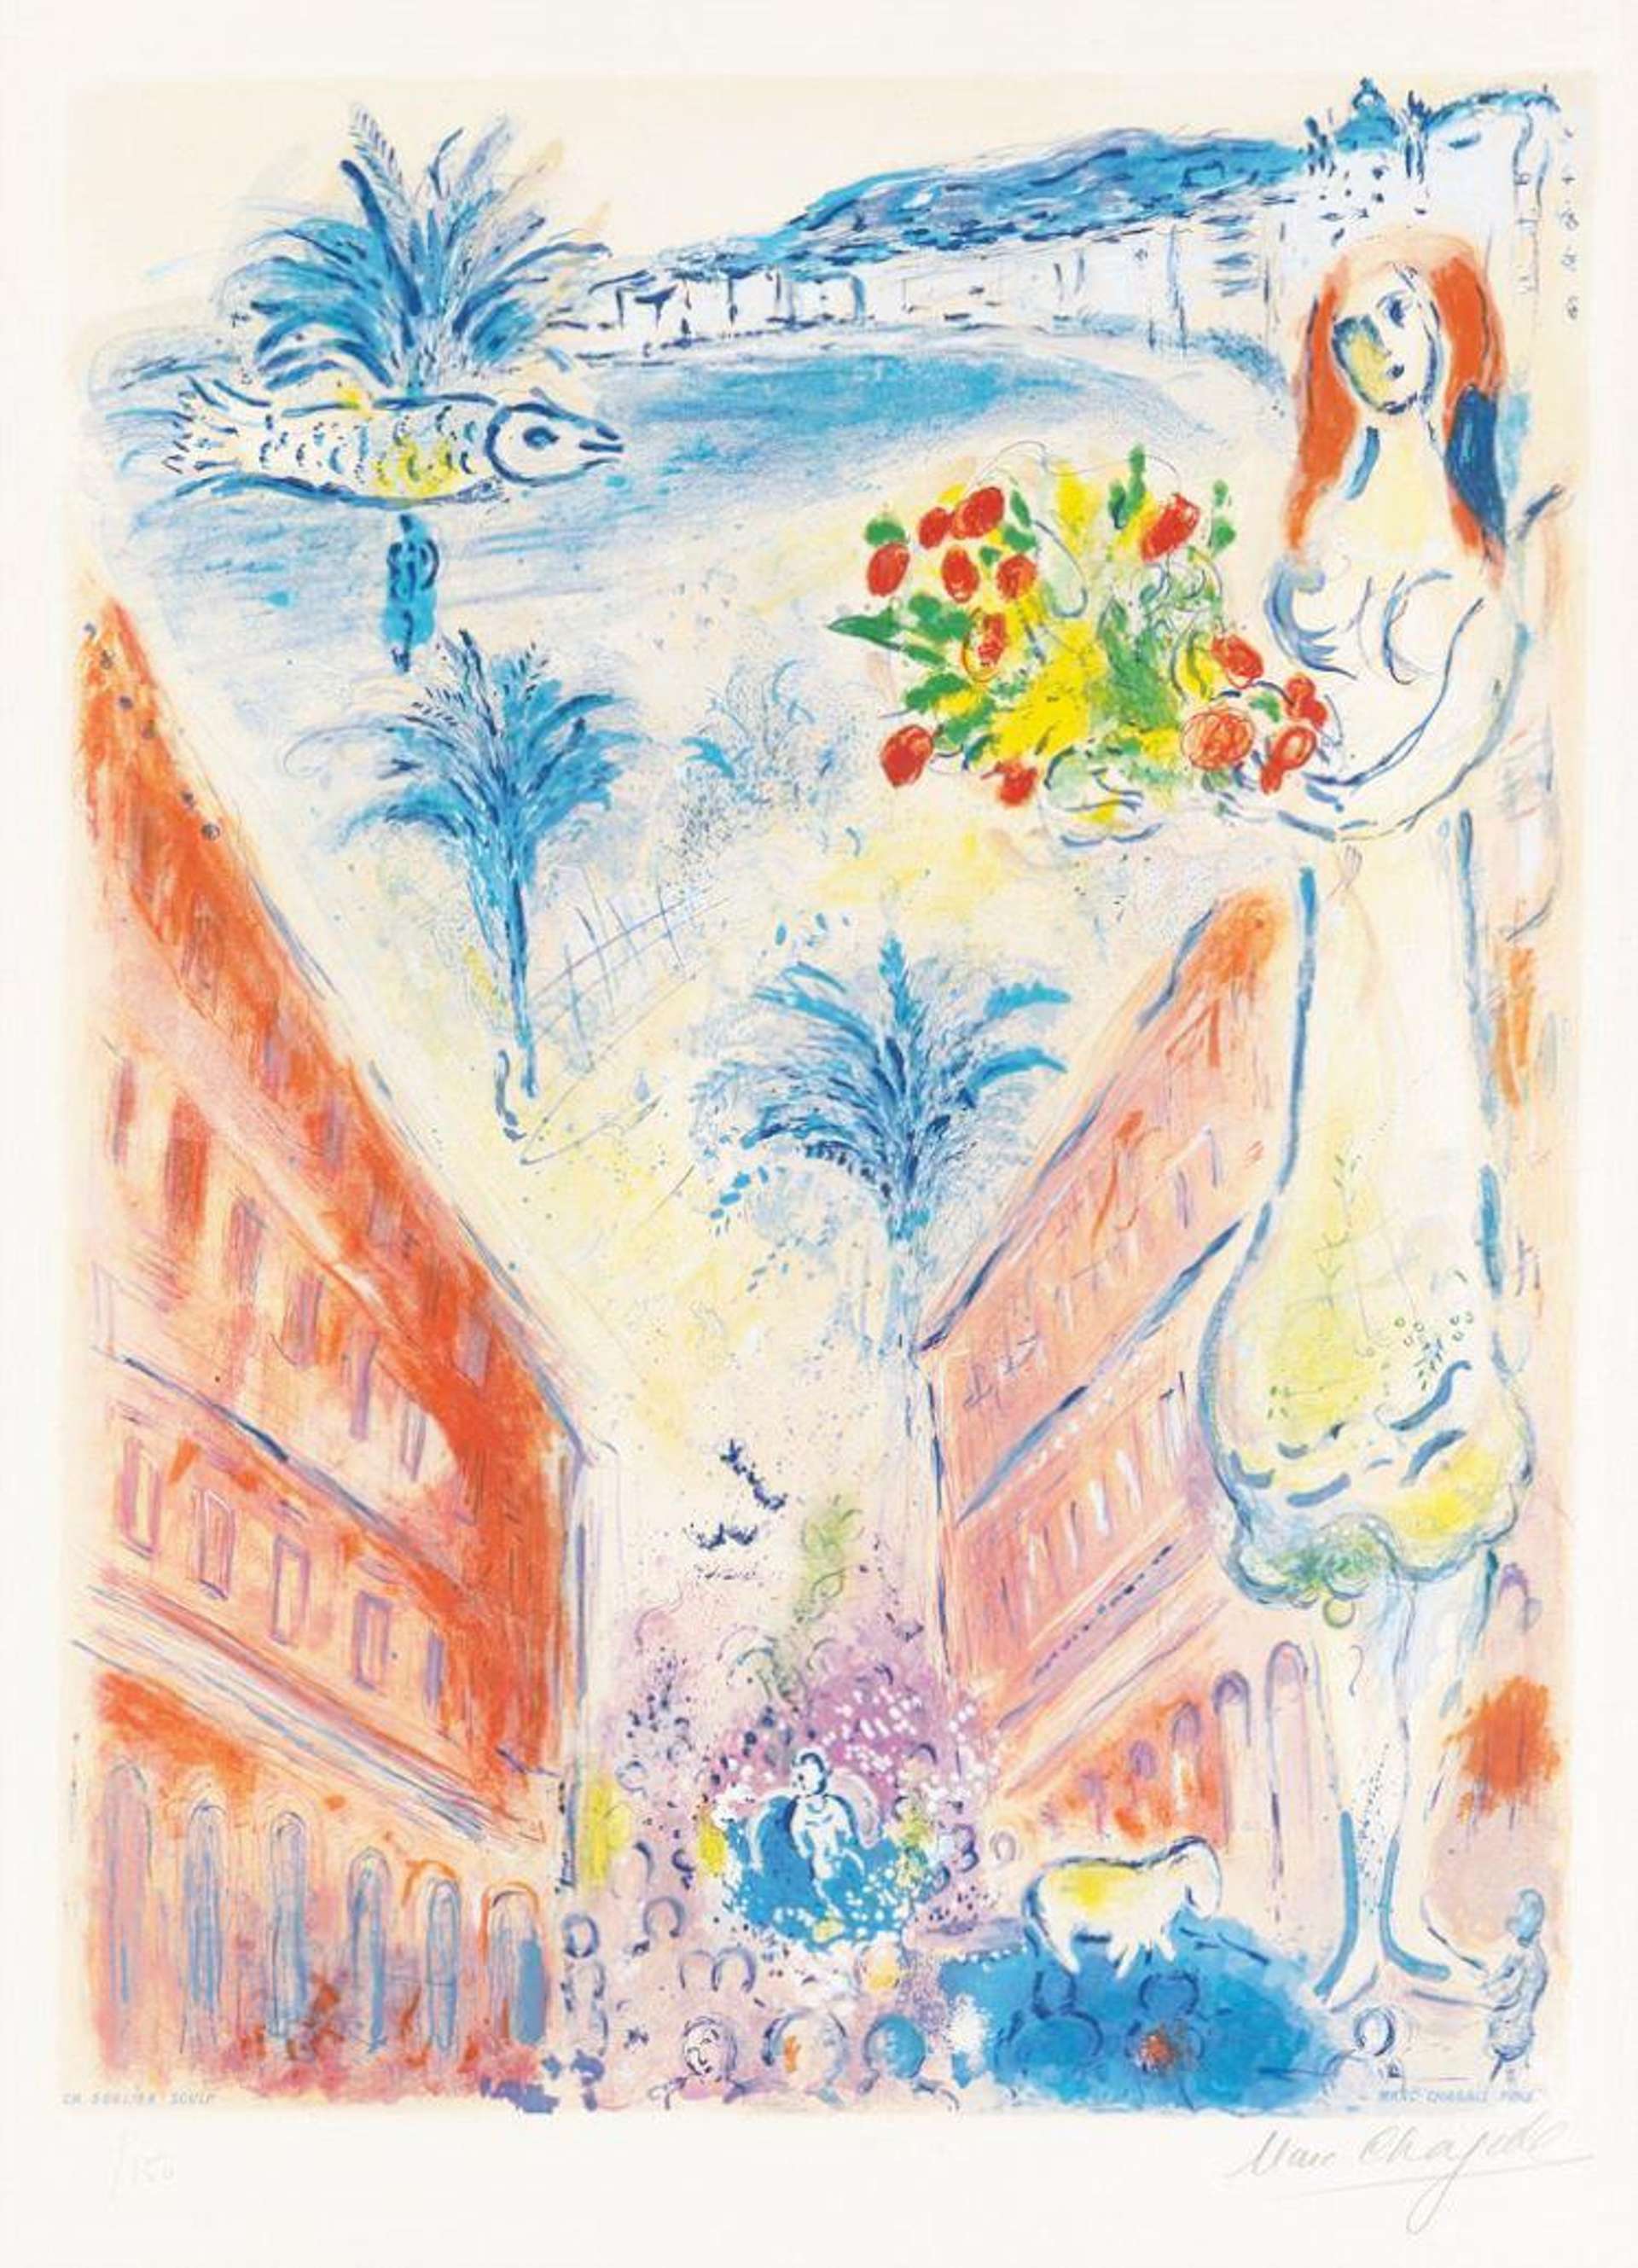 Avenue De La Victoire À Nice (Nice et la Côte d'Azur) - Signed Print by Marc Chagall 1967 - MyArtBroker